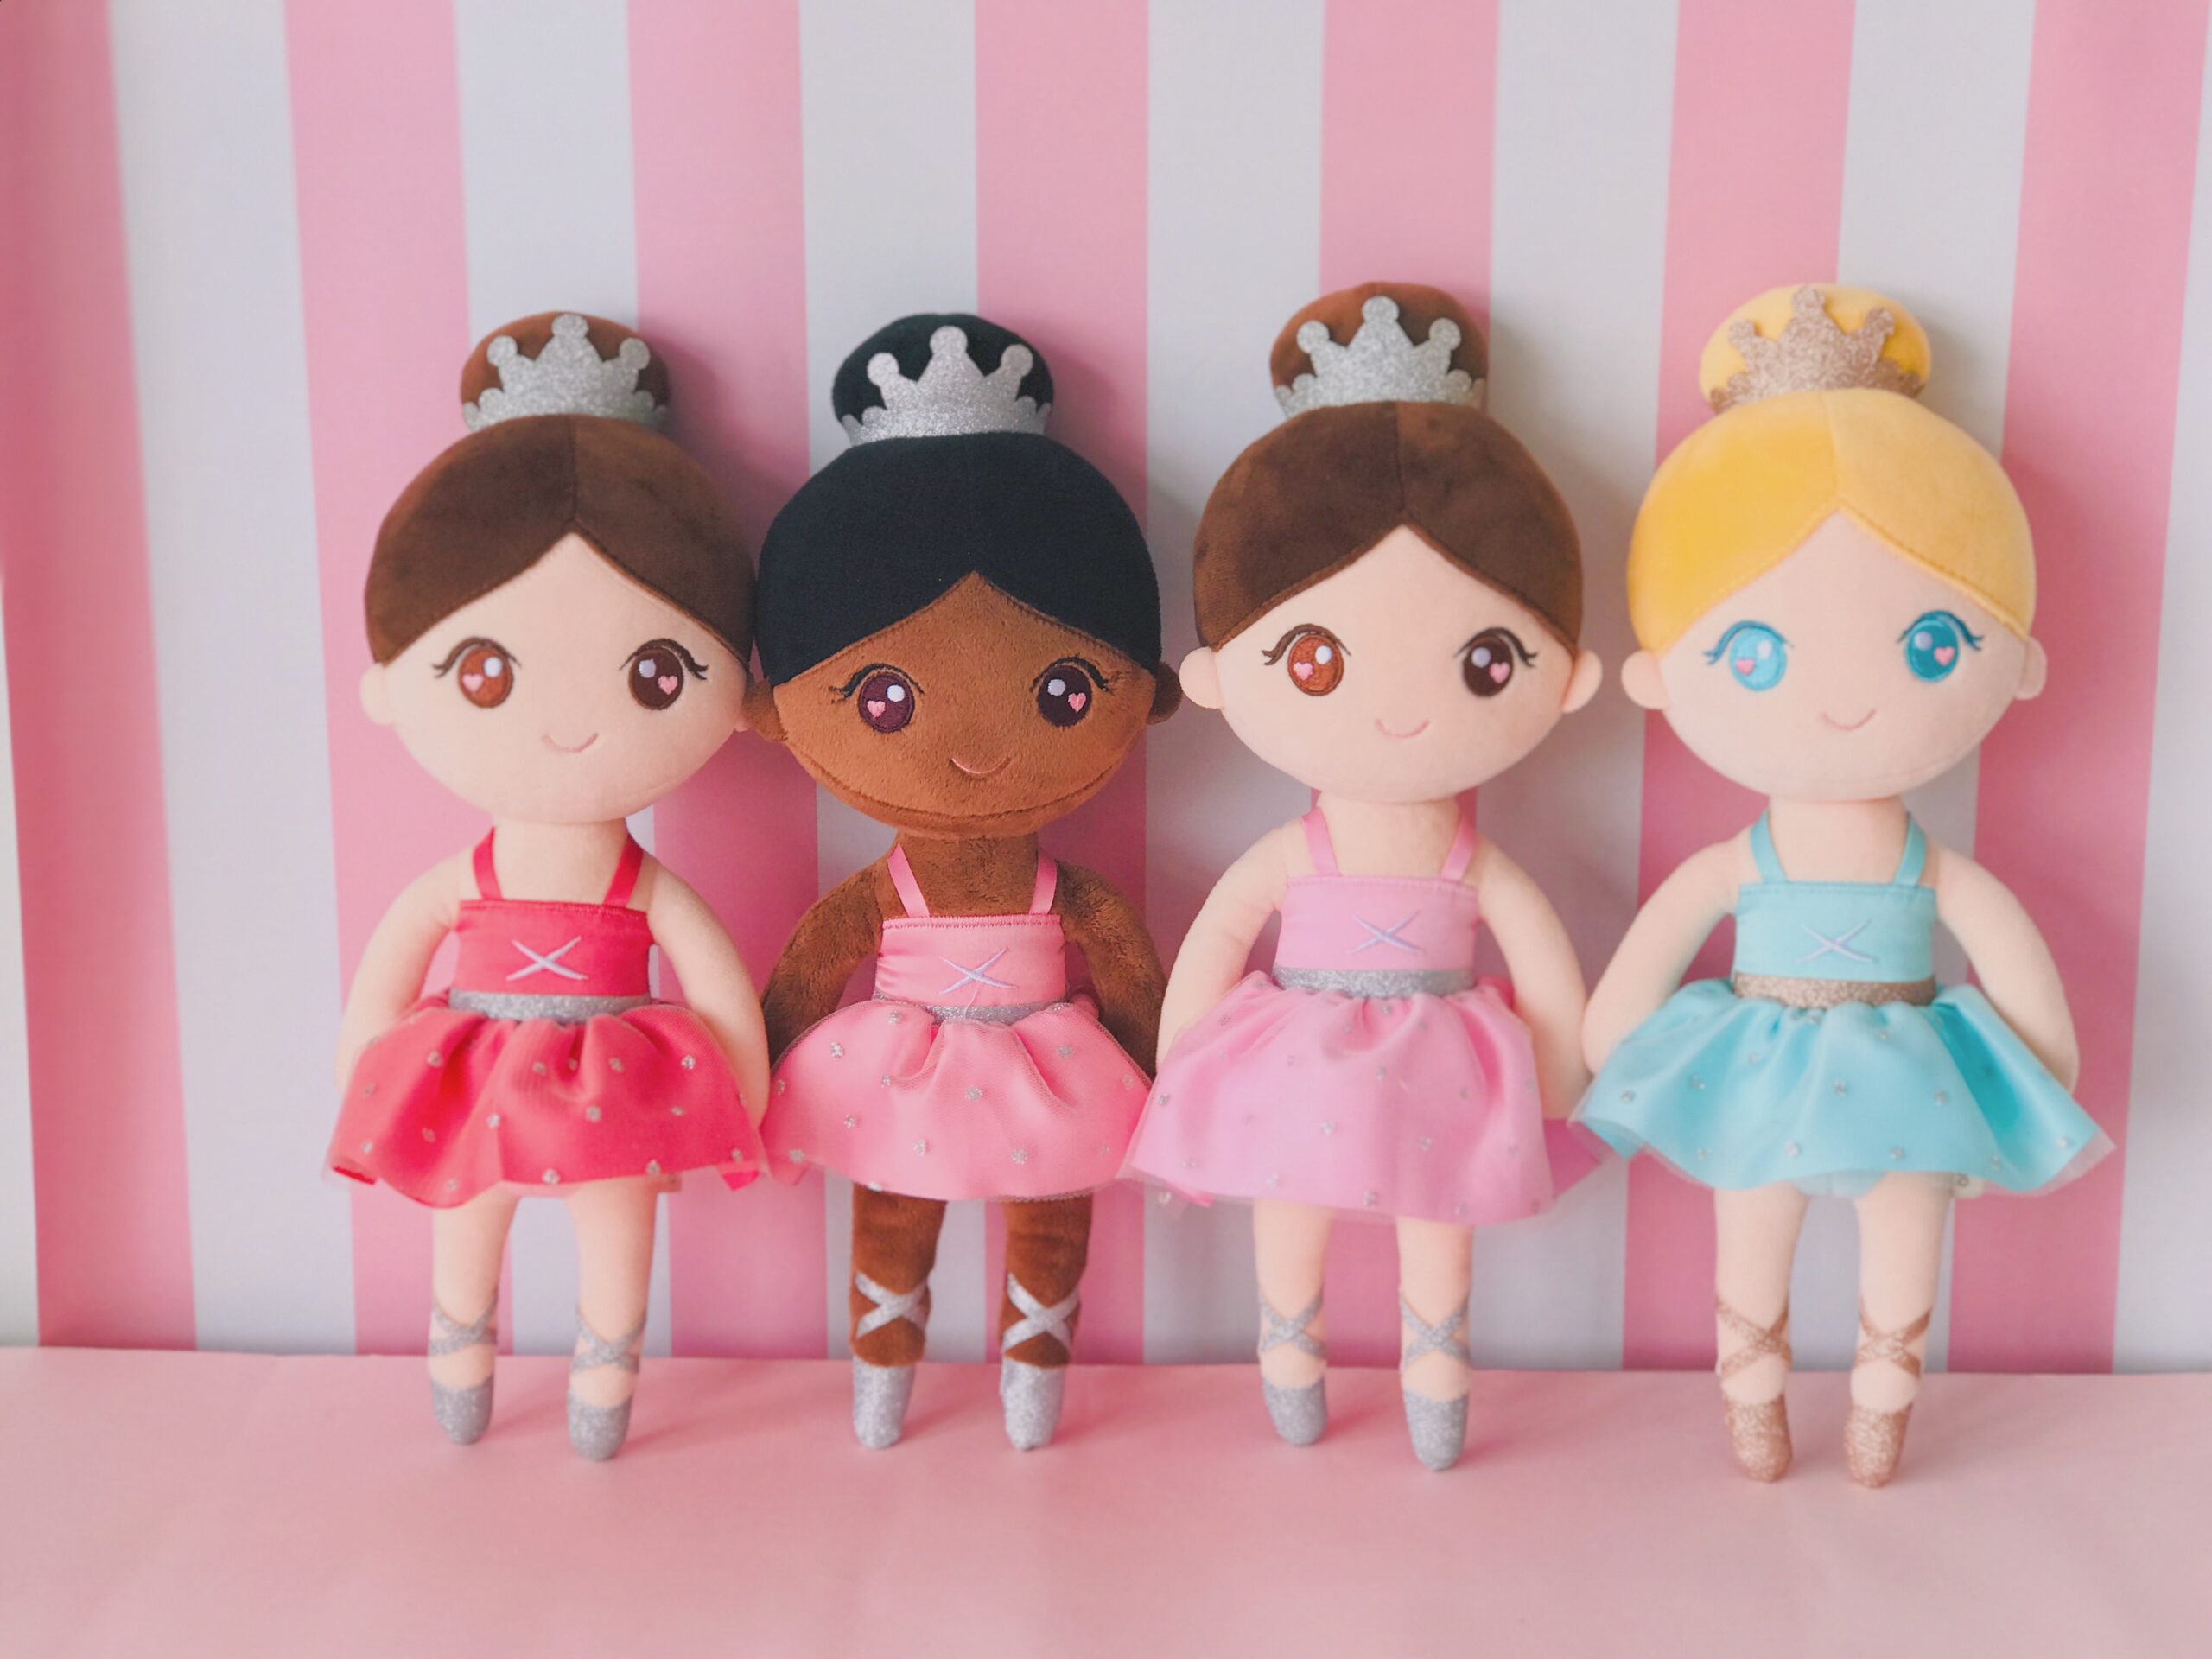 Gloveleya Plush Toys 2020 New Design Ballet Dancer Dolls Curls Dolls Dreaming Girl Gifts for Kids Soft Toys Girl‘s Birthday Gift